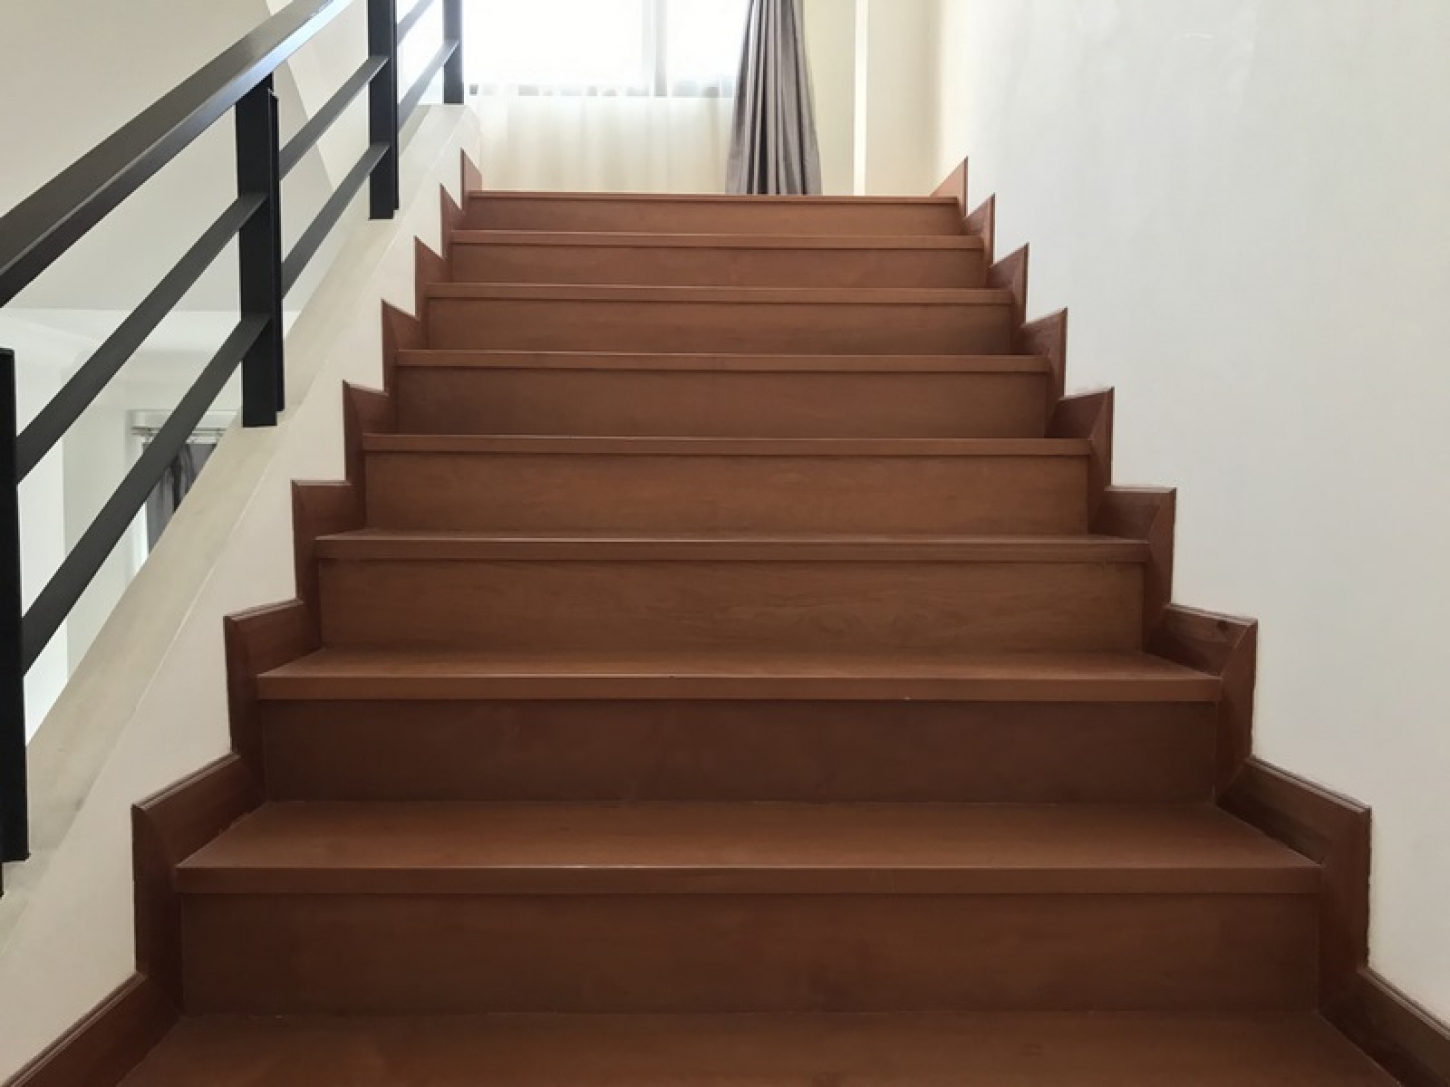 Wist je dat de allereerste trappen uit hout werden gemaakt?